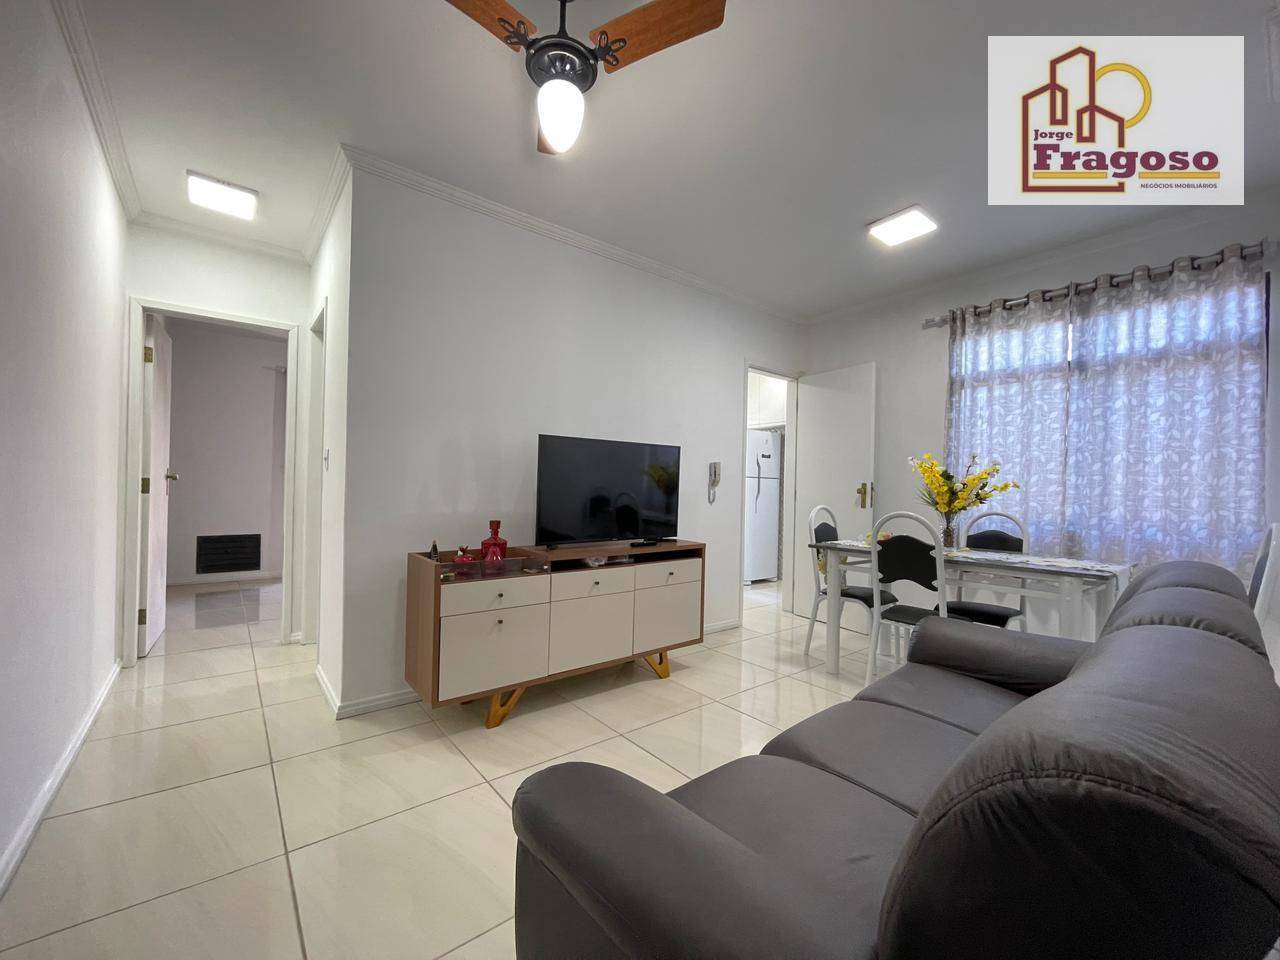 Apartamento à venda em Vila Nova, Cabo Frio - RJ - Foto 2